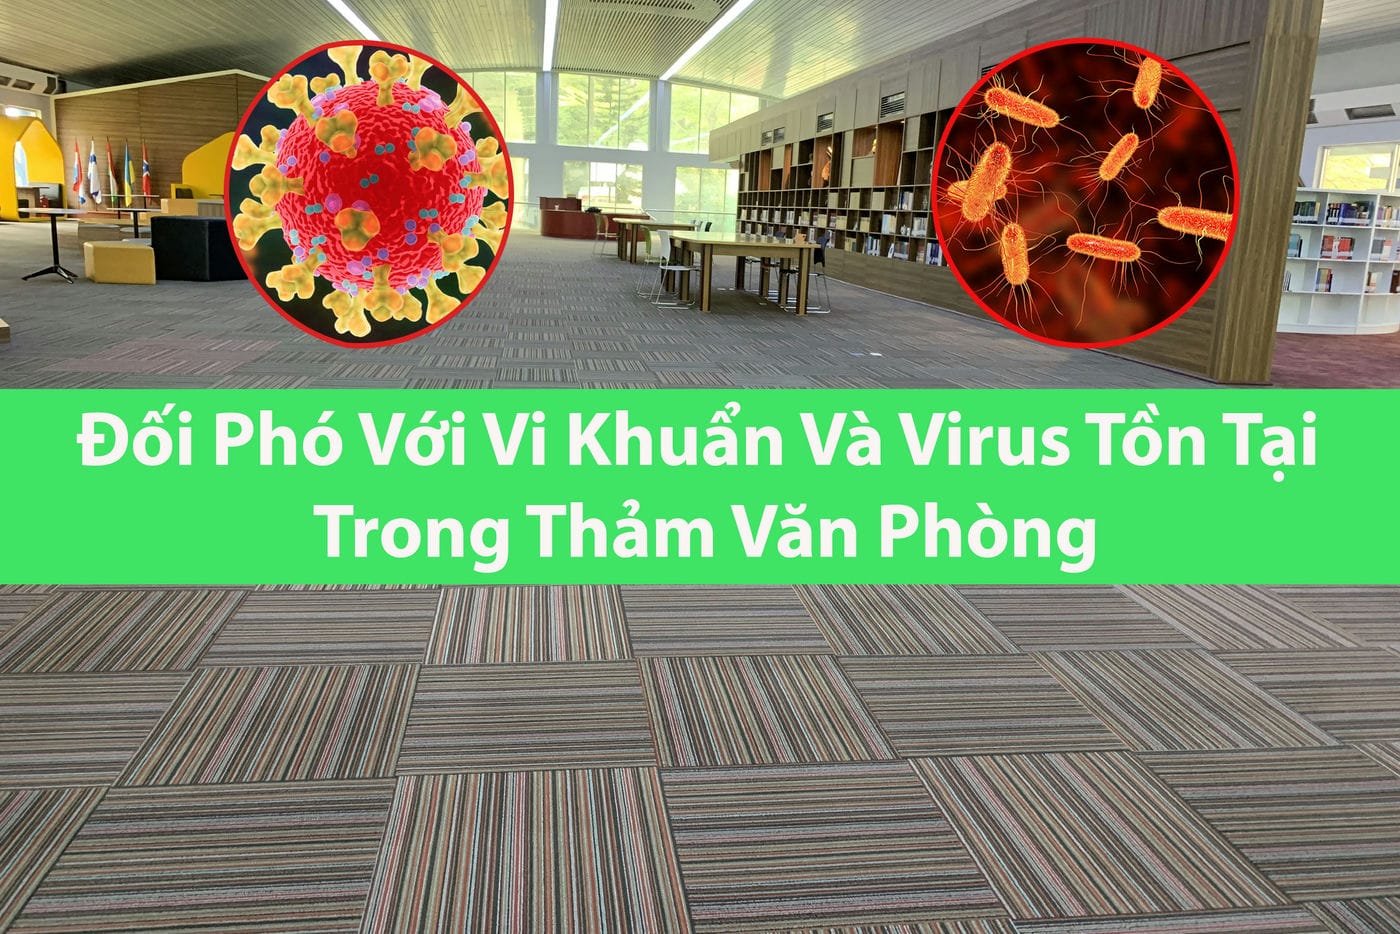 doi-pho-vi-khuan-virus-tren-tham-van-phong